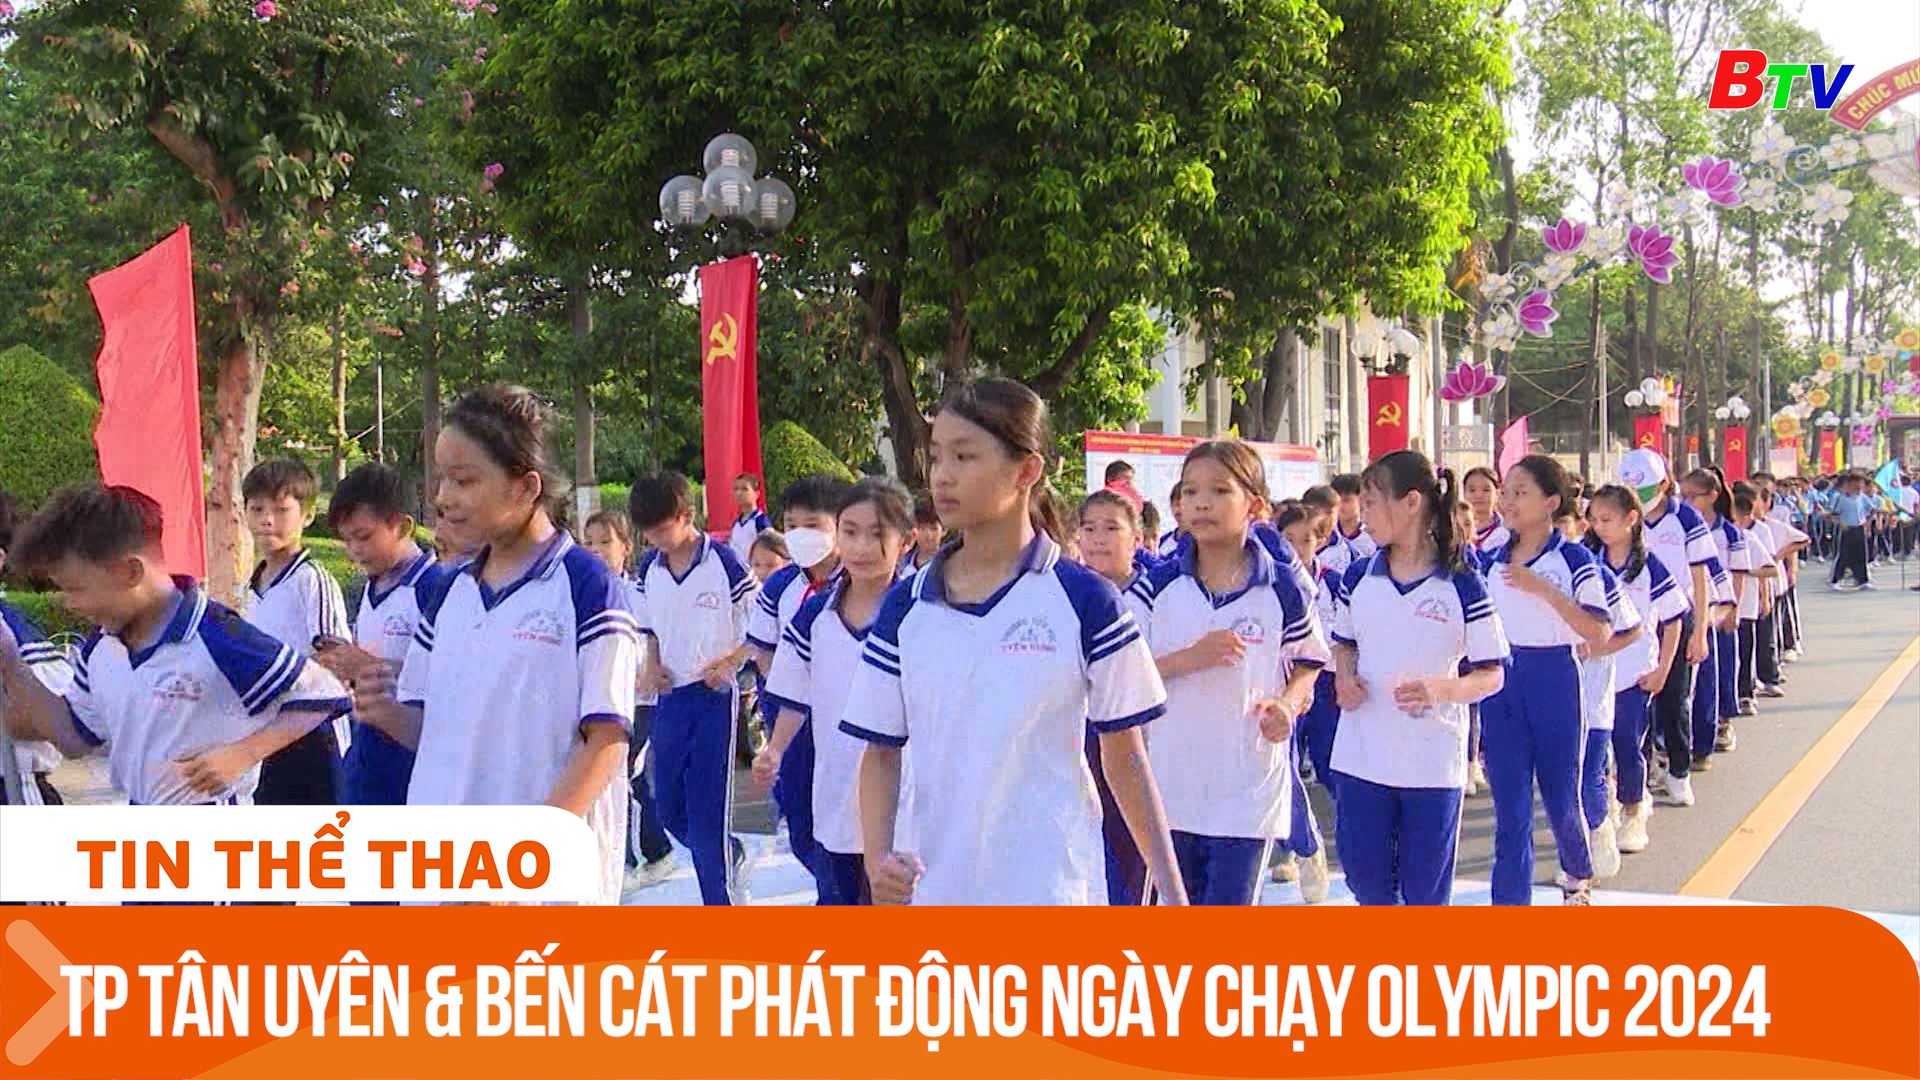 Thành phố Tân Uyên & Bến Cát phát động ngày chạy Olympic 2024 | Tin Thể thao 24h